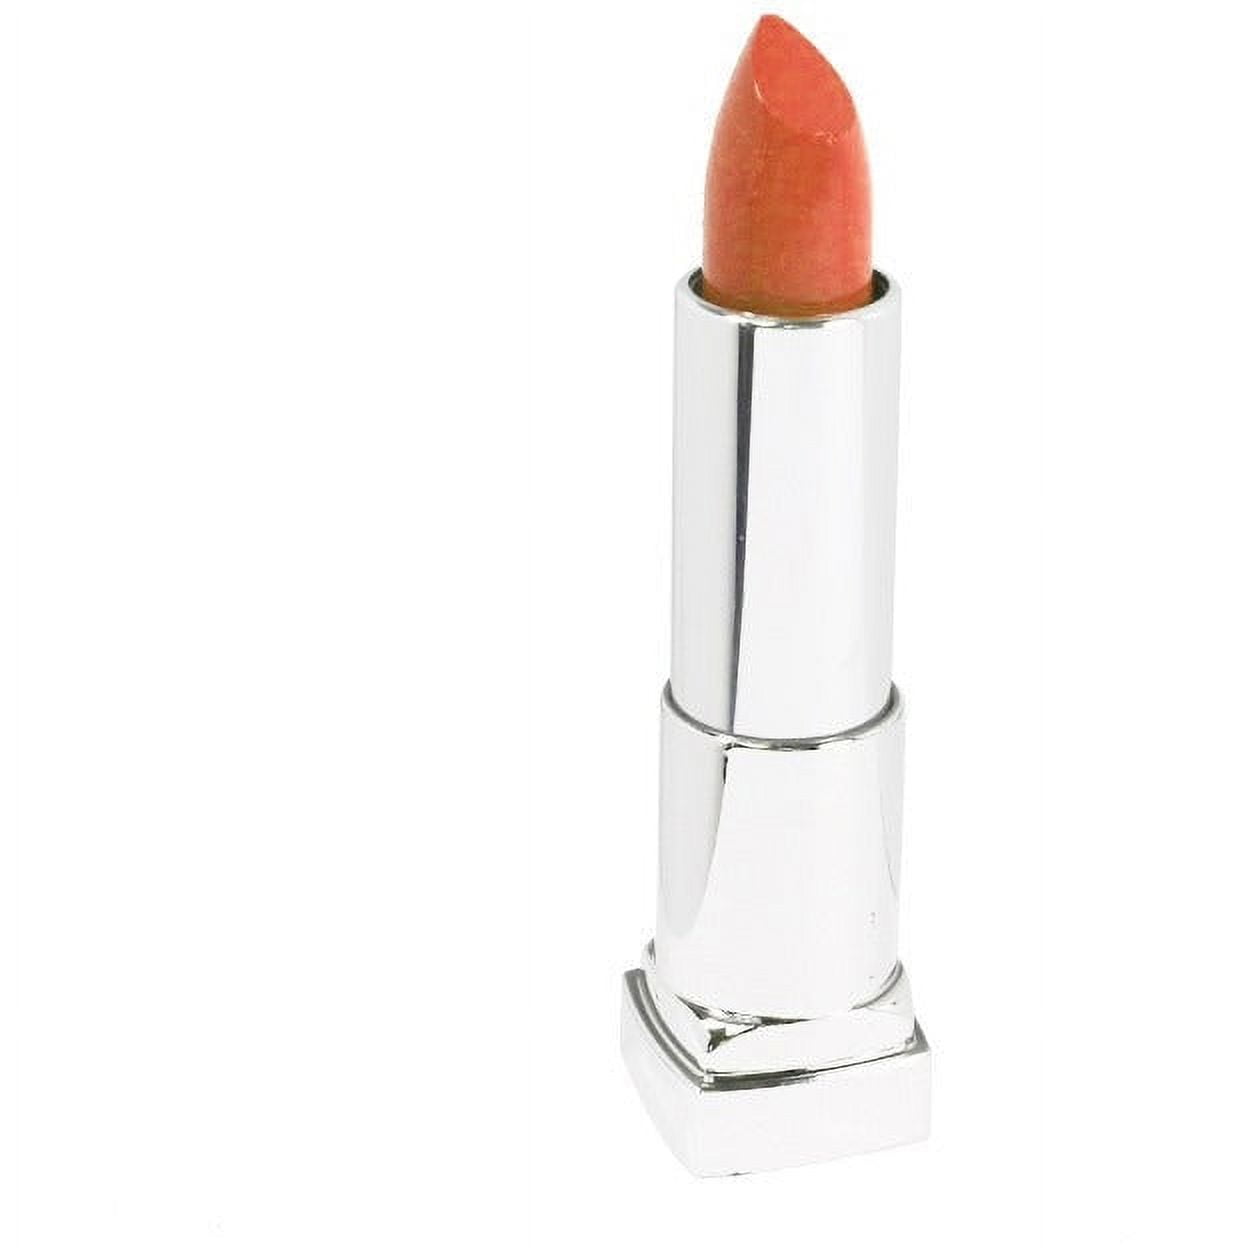 Maybelline Color Sensational Finish Rosy Risk Cream Lipstick